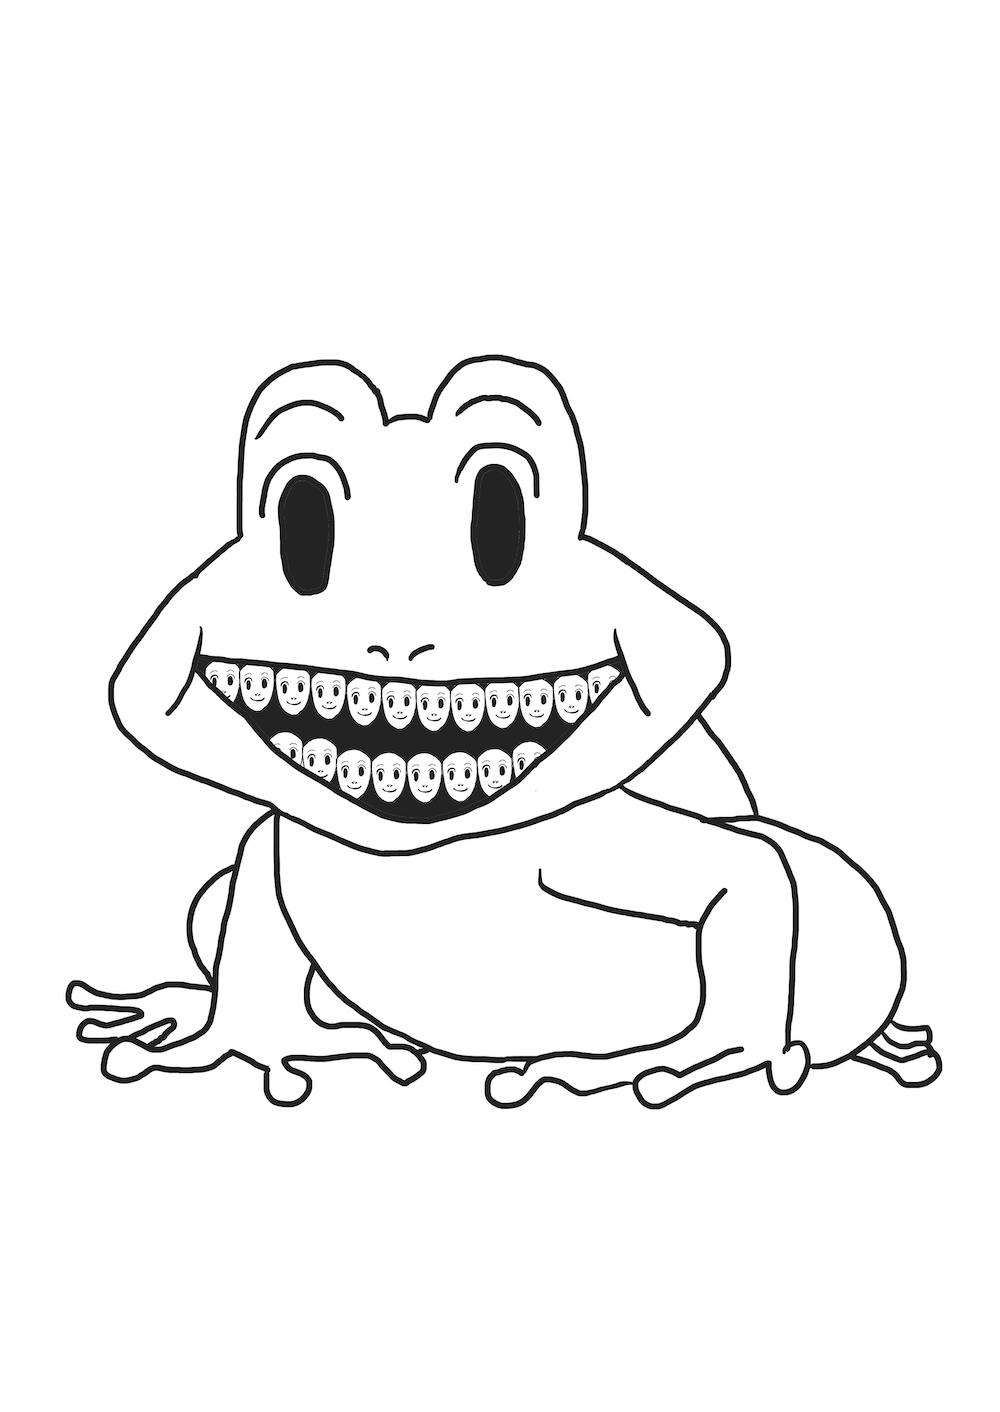 シバタ蛙